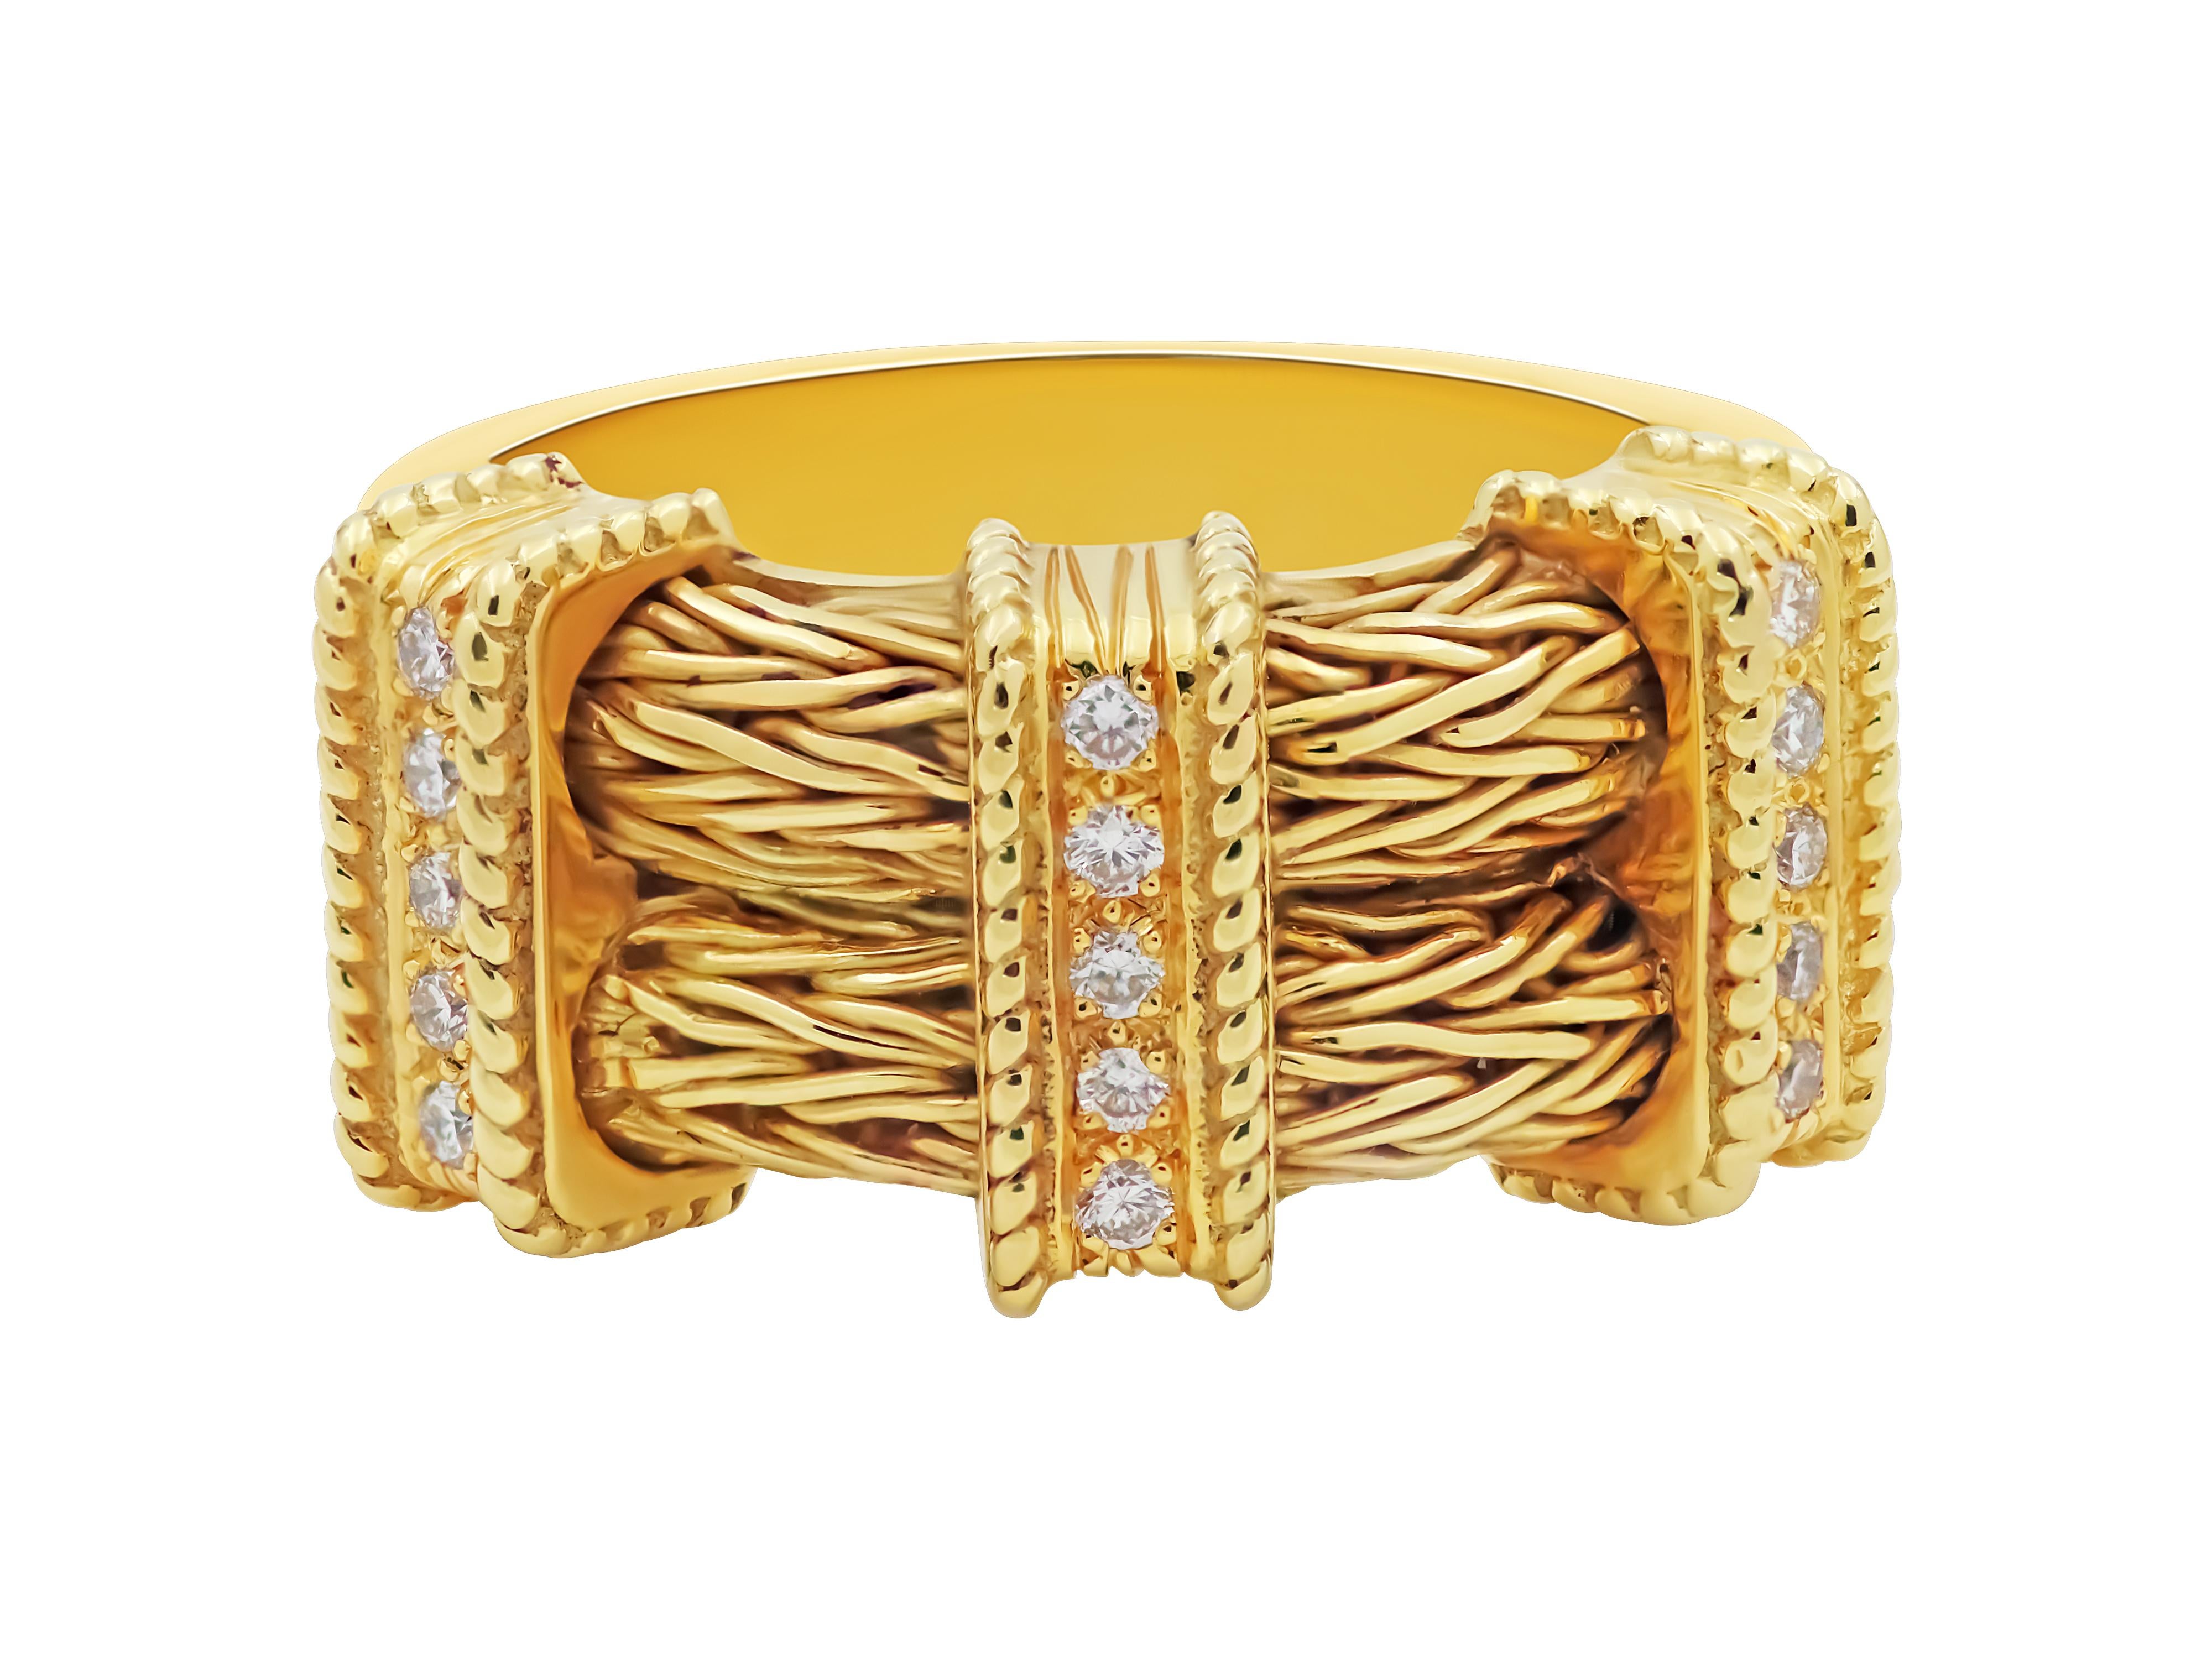 Aus der Neoclassic Collection von Dimos stammt dieser Ring aus 18 Karat Gelbgold mit einer wunderschönen doppelten Strickarbeit und den Diamantstäben, die das Set und den besonderen Look unseres Rings vervollständigen. 

Abmessungen
Breite oben: